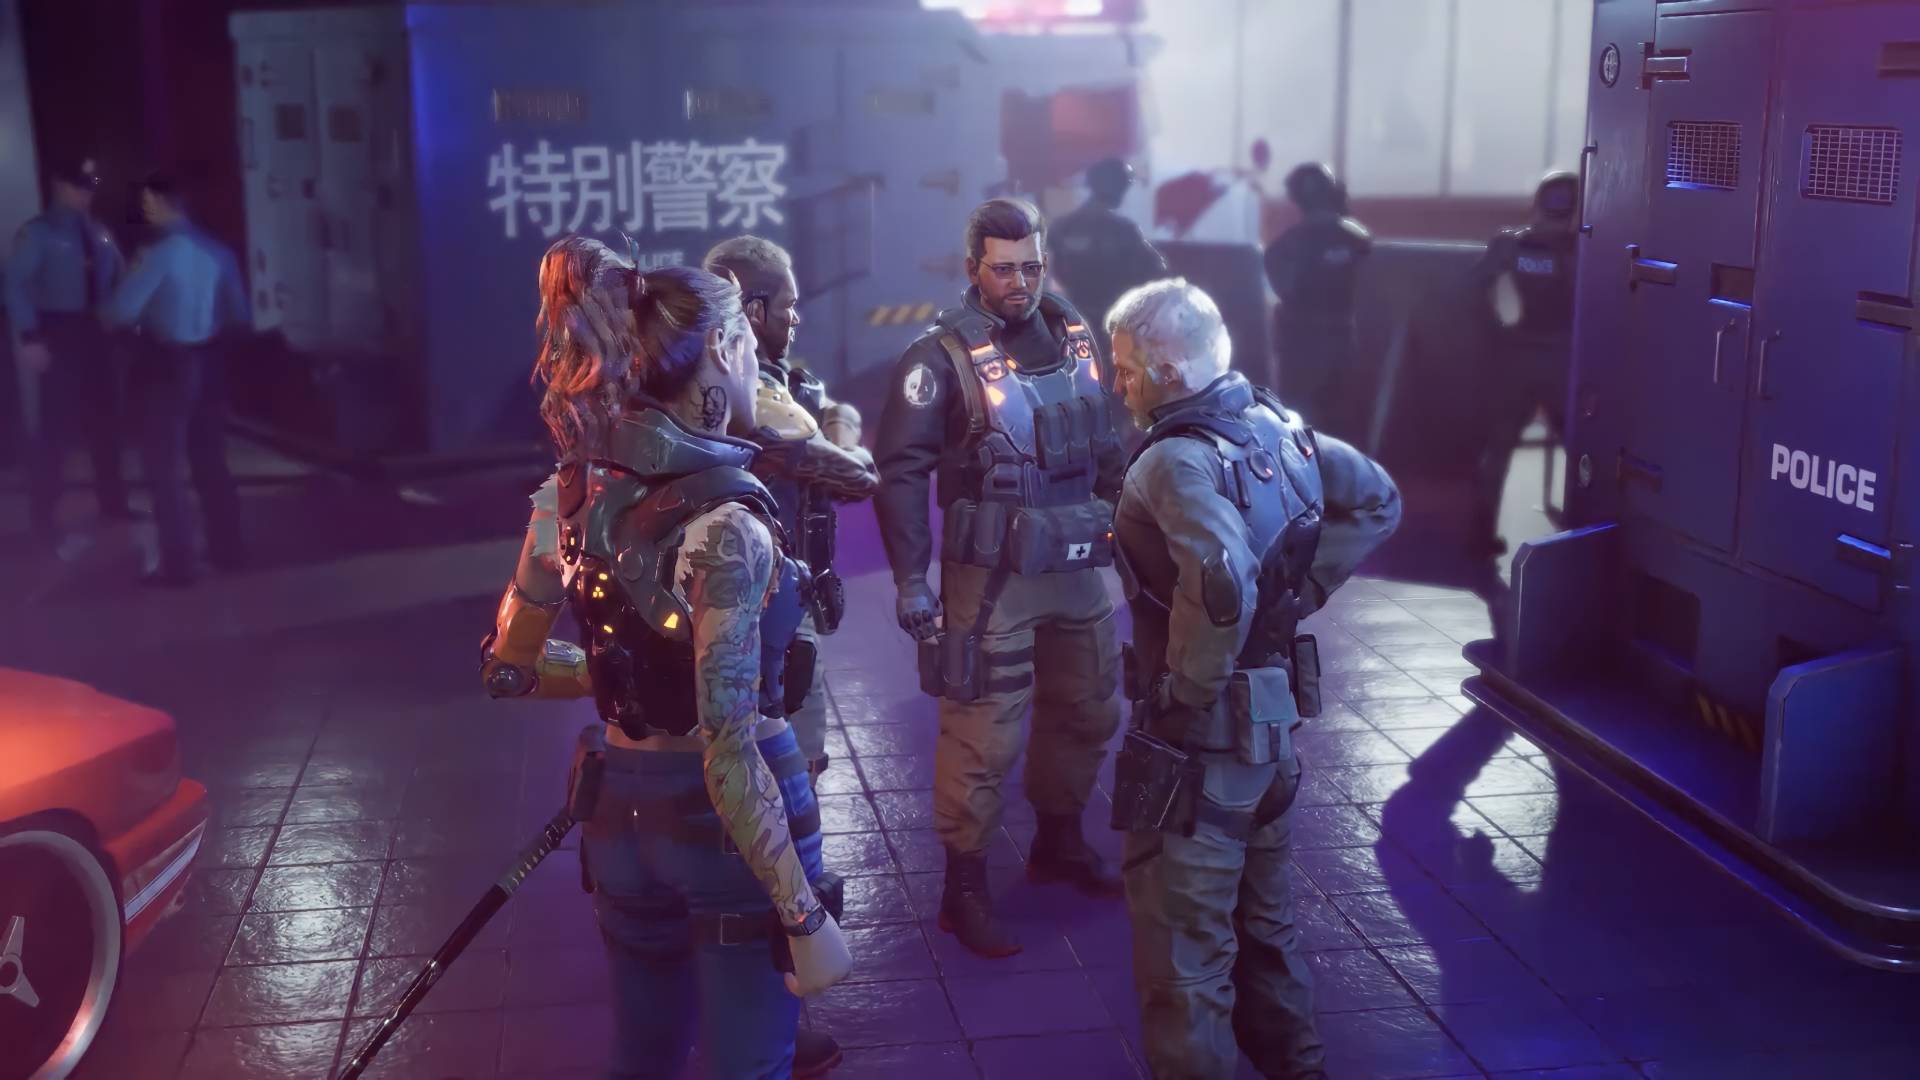 Bir grup siberpunk paralı askeri, duvarlarında Çince karakterler bulunan bir sanayi bölgesinde yağmurun altında duruyor